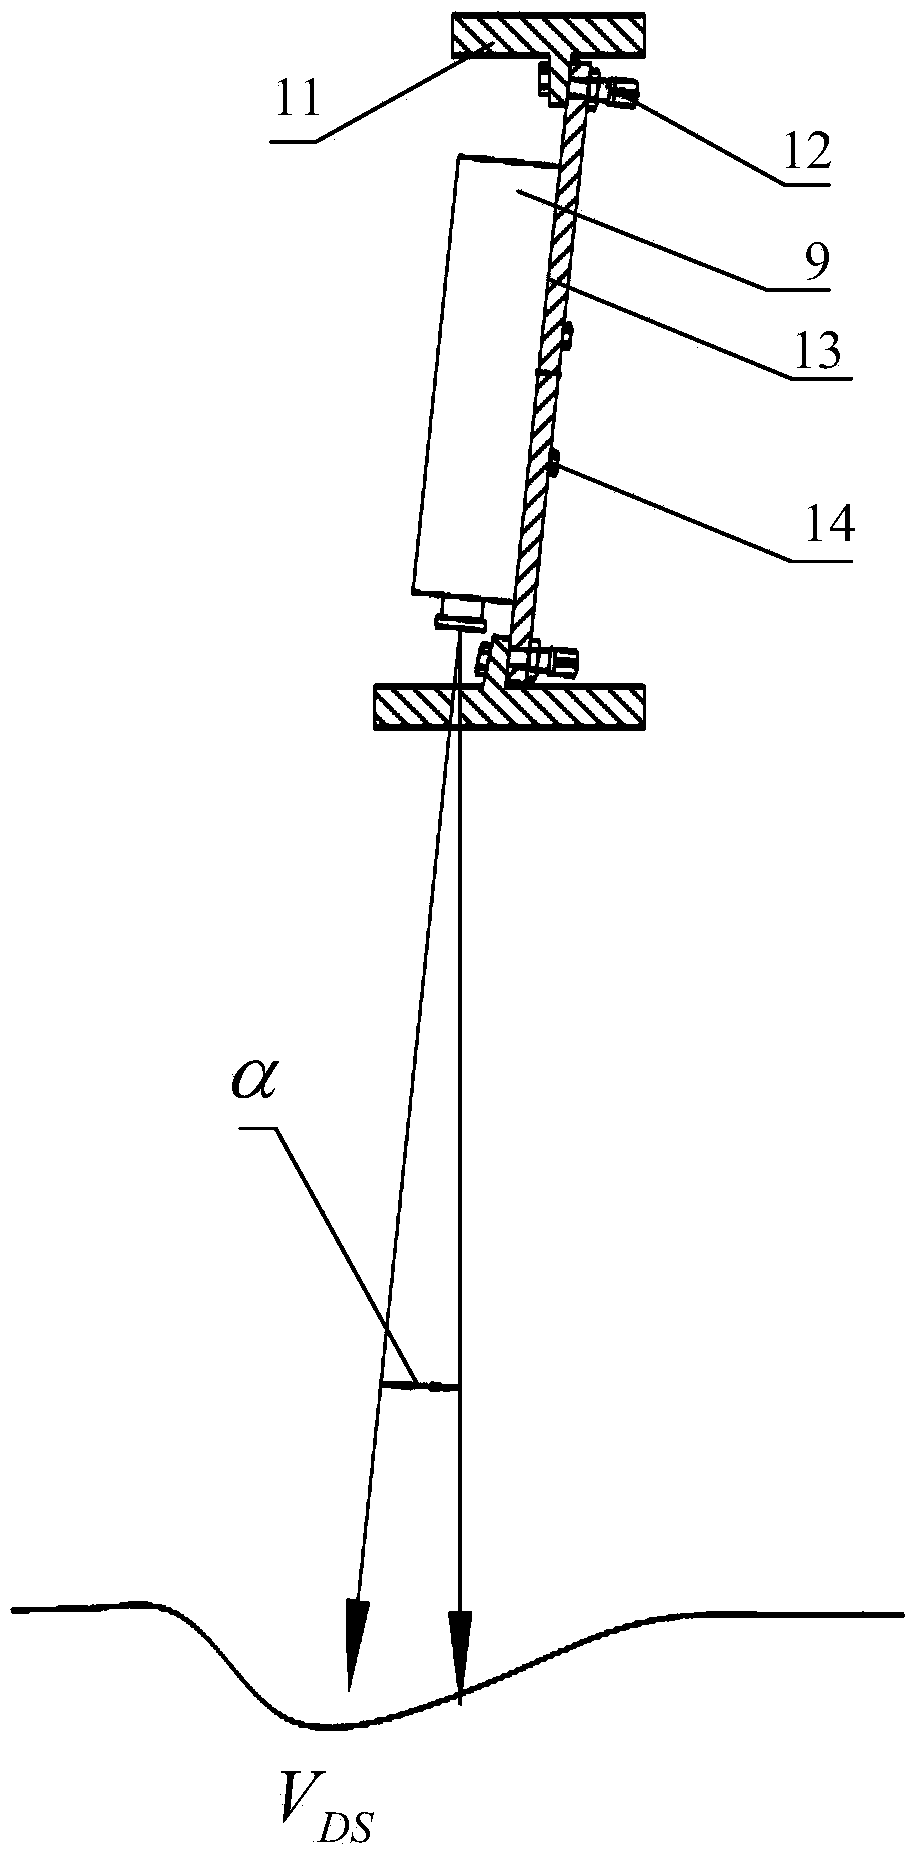 Laser beam parallelism adjustment system and laser beam parallelism adjustment method for road surface deflection measurement